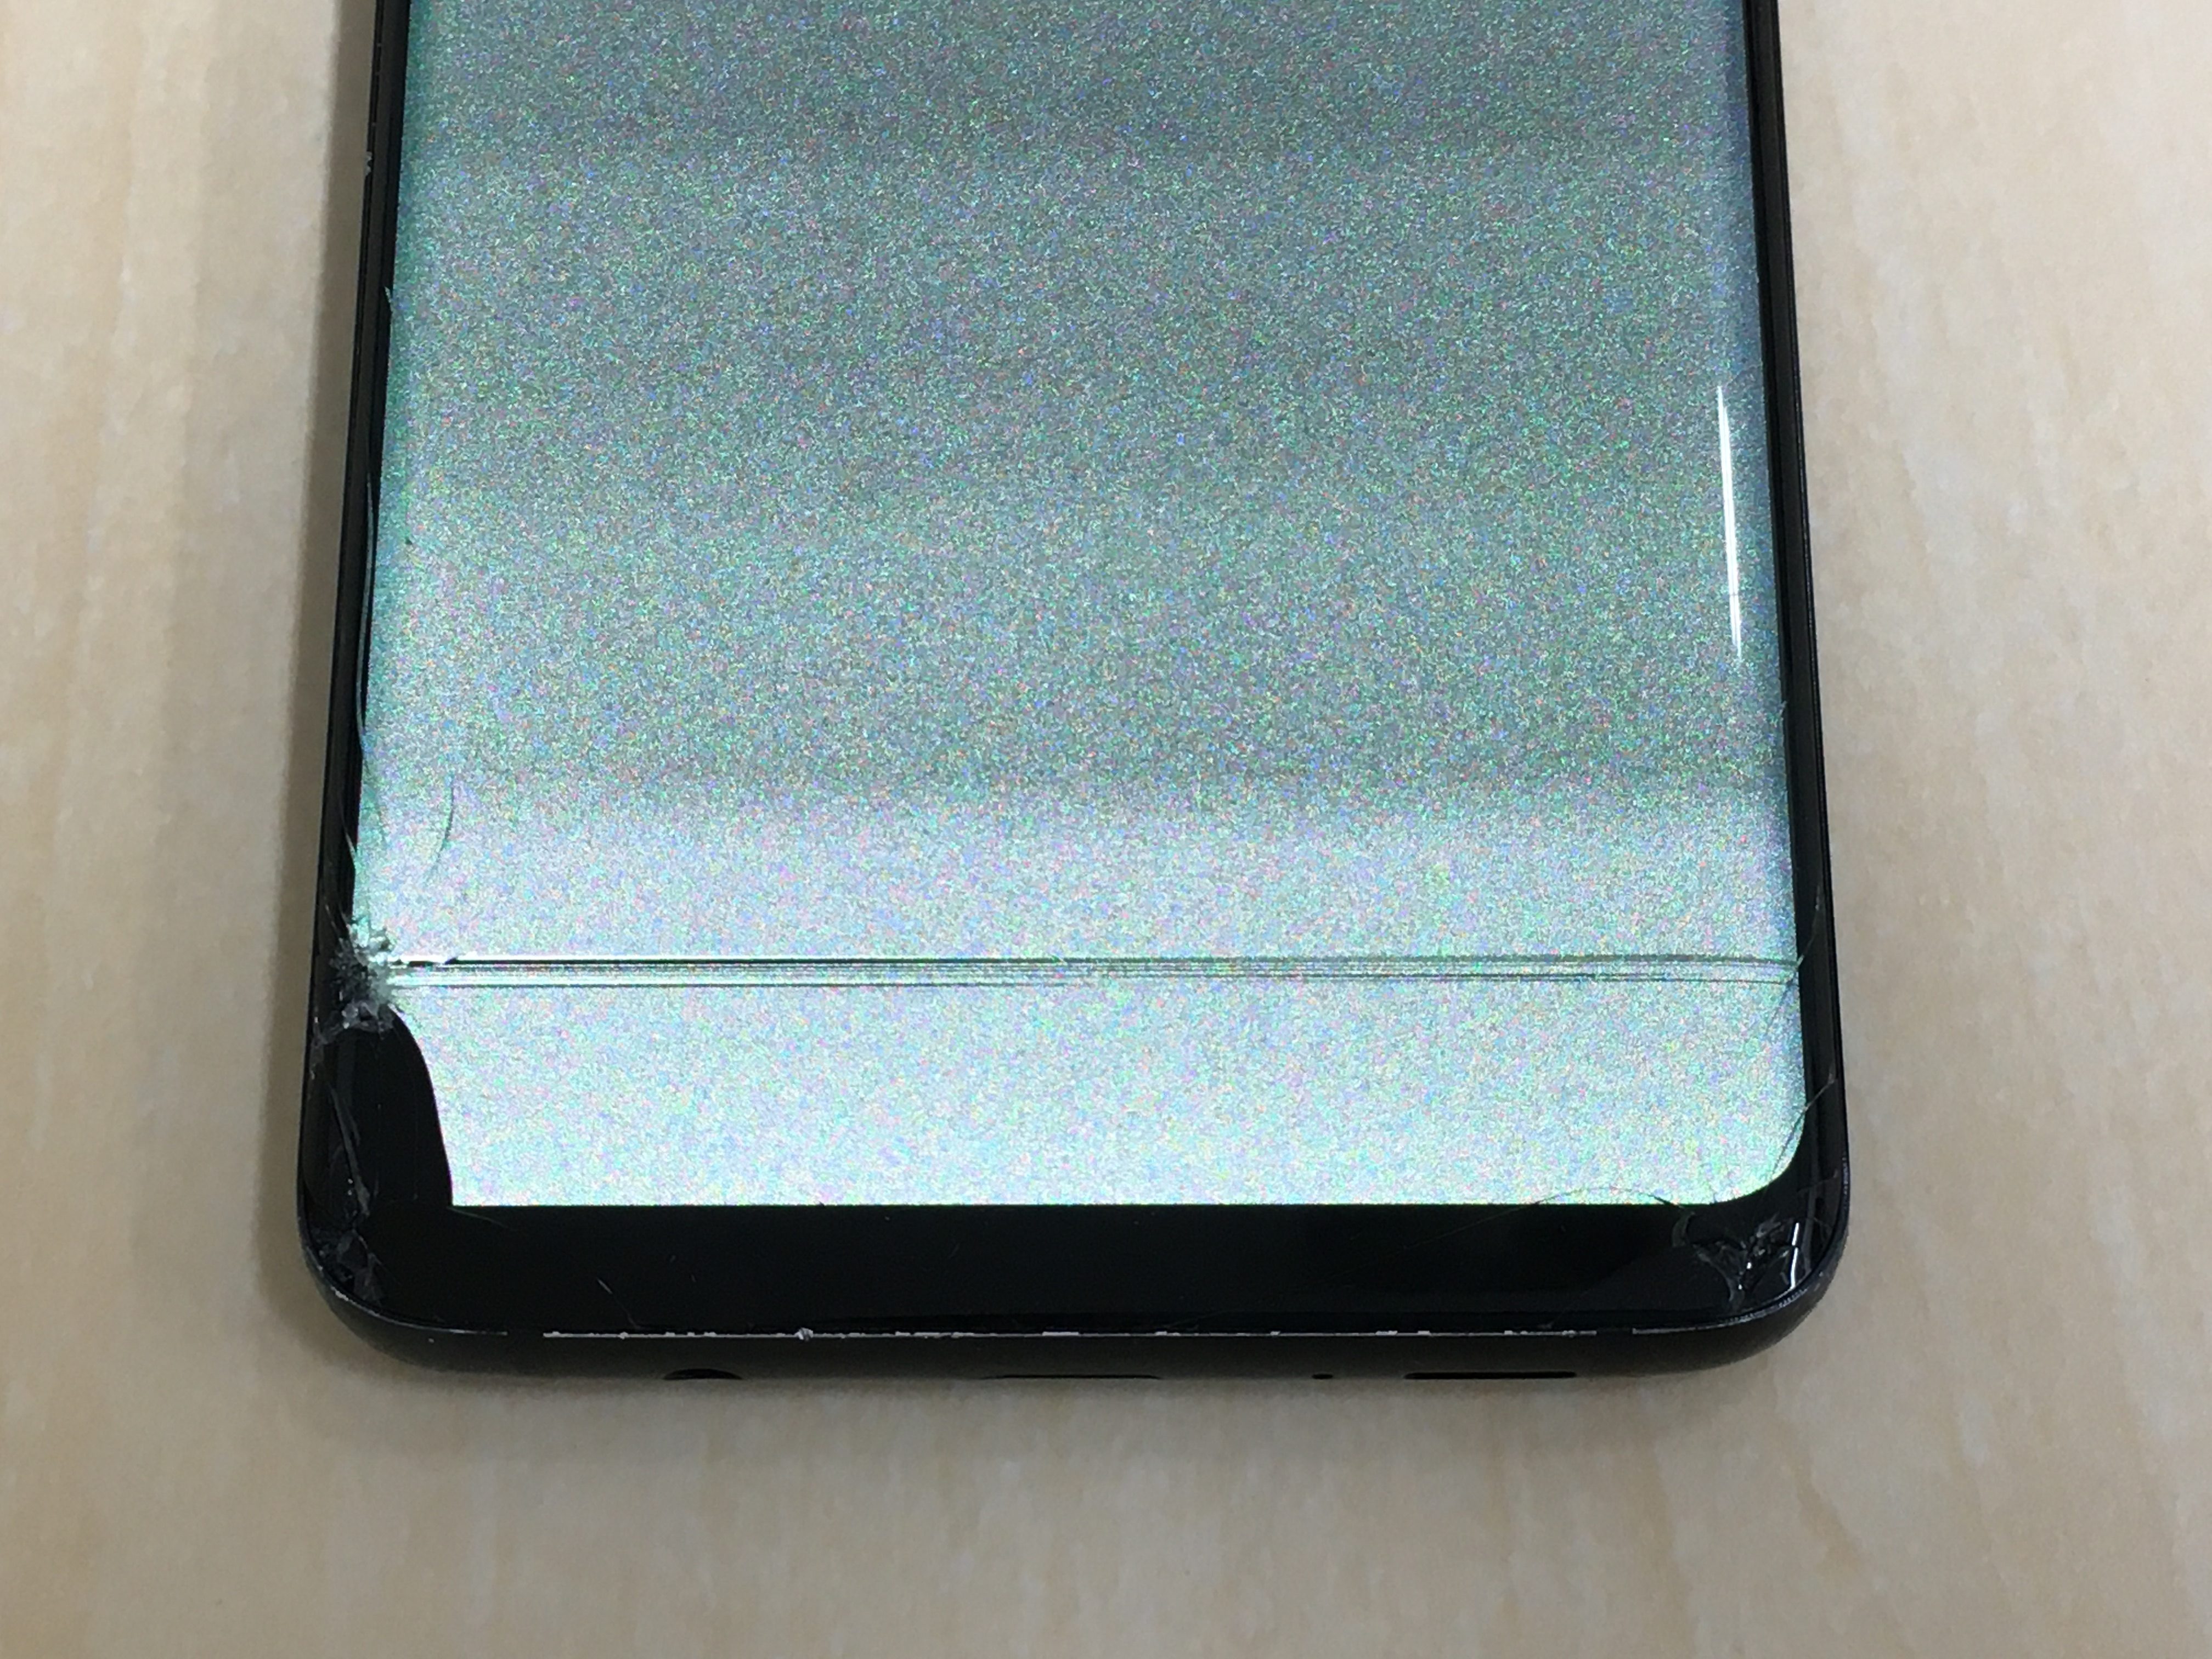 割れて画面が見れなくなったgalaxy S9 データが欲しい Xperia Galaxy Zenfone Huawei Nexus修理のアンドロイドホスピタル